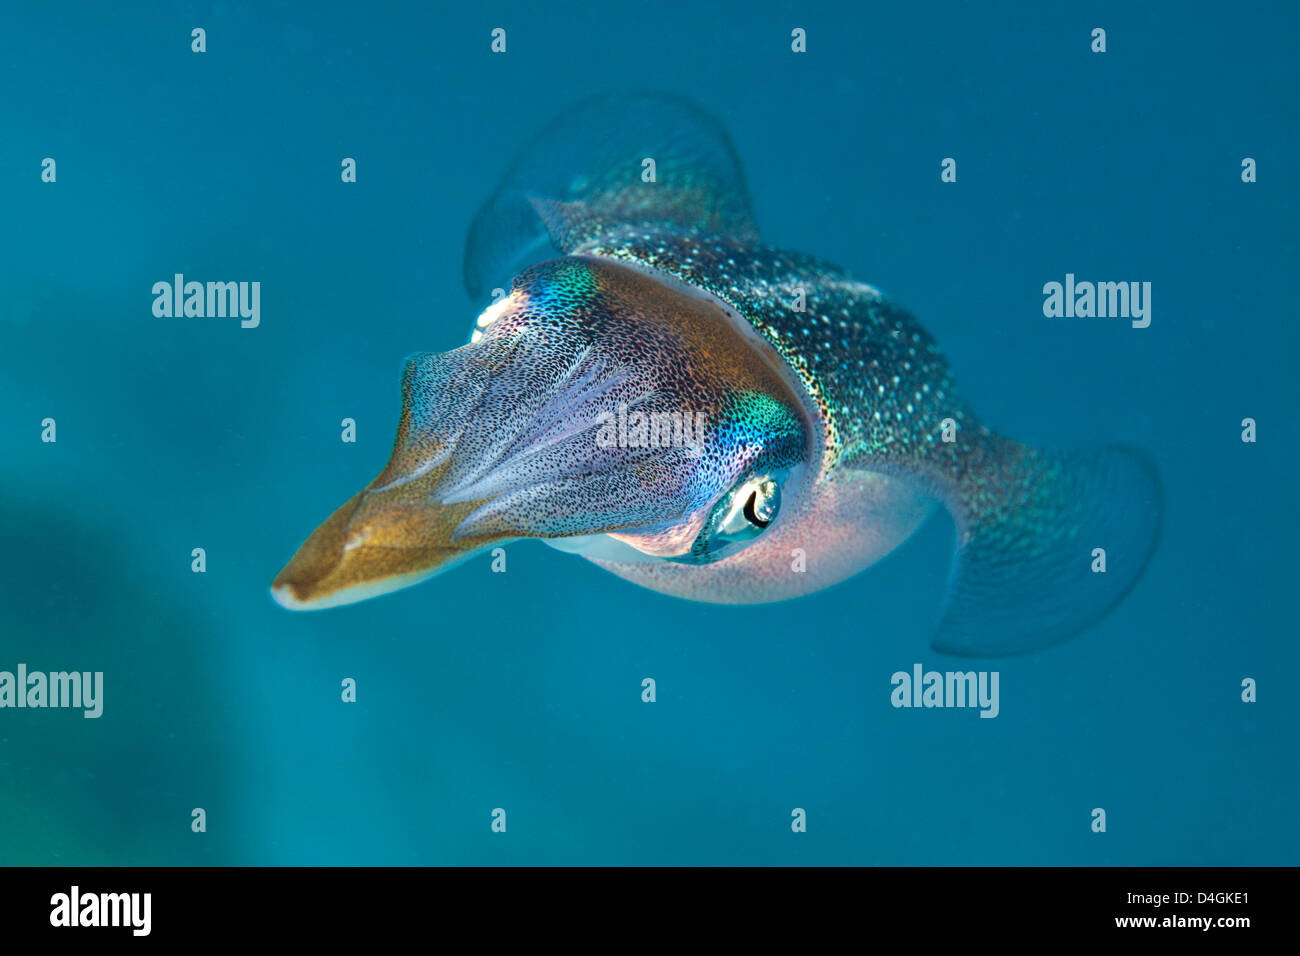 Karibischer Riff Tintenfisch, Sepioteuthis Sepioidea, wird allgemein in seichte Ufer Wasser der Karibik beobachtet. Stockfoto